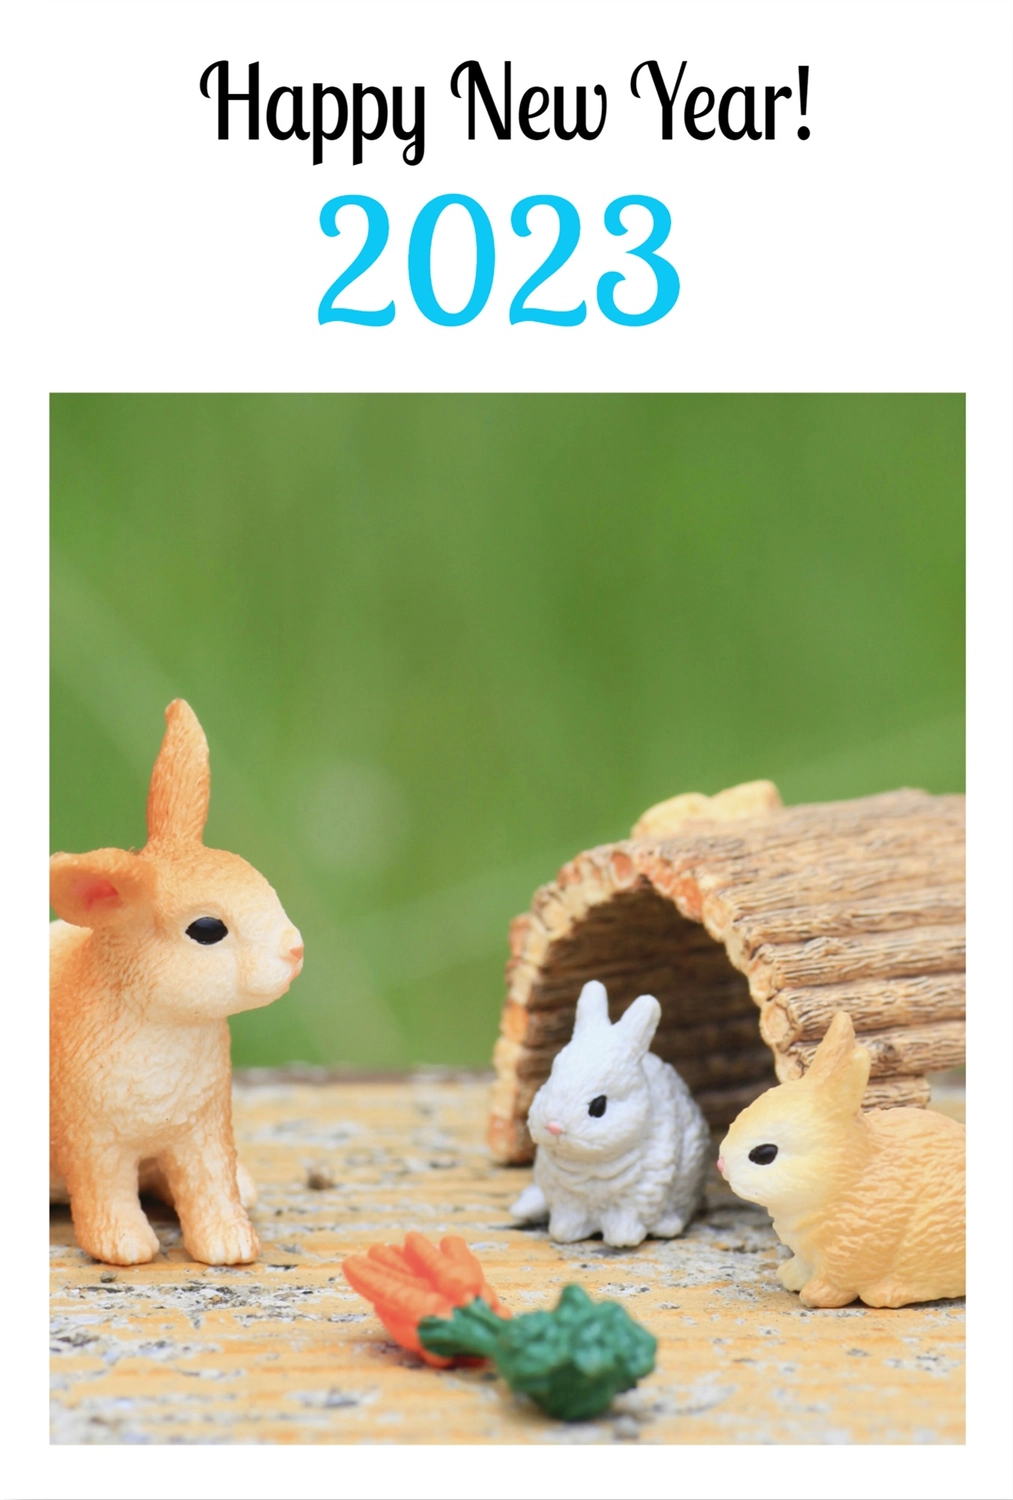 シュライヒ　巣穴の3匹のうさぎ　2023, 卯, 屋外, 巣, 年賀状テンプレート